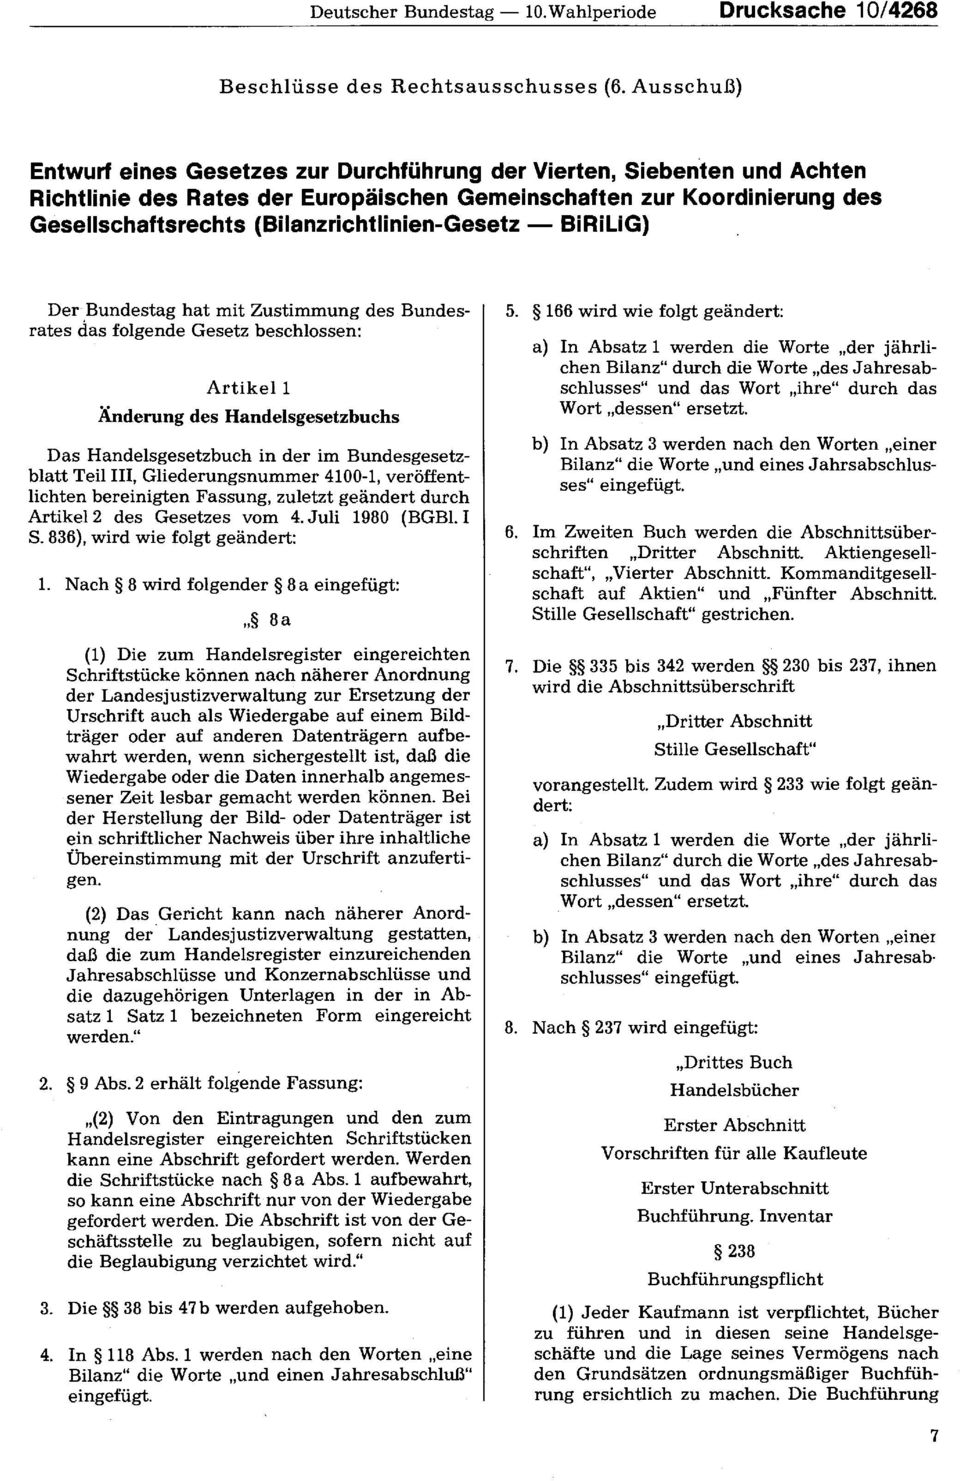 (Bilanzrichtlinien-Gesetz BiRiLiG) Der Bundestag hat mit Zustimmung des Bundesrates das folgende Gesetz beschlossen: Artikel 1 Änderung des Handelsgesetzbuchs Das Handelsgesetzbuch in der im